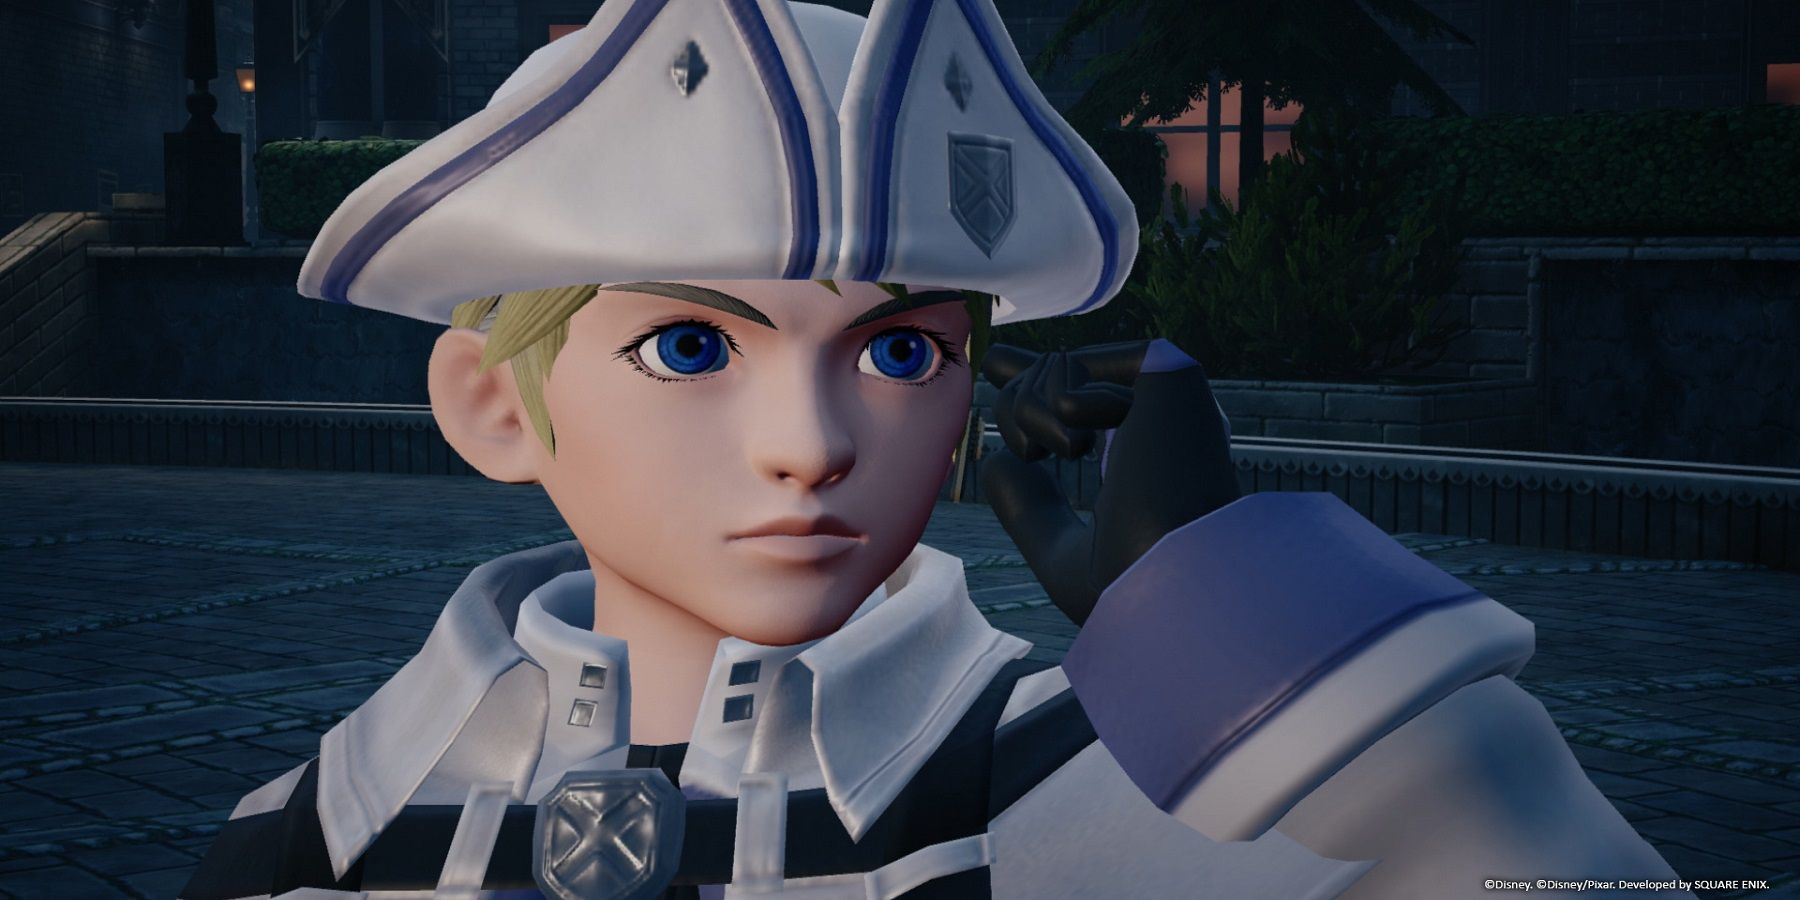 Kingdom Hearts Missing Link protagonist